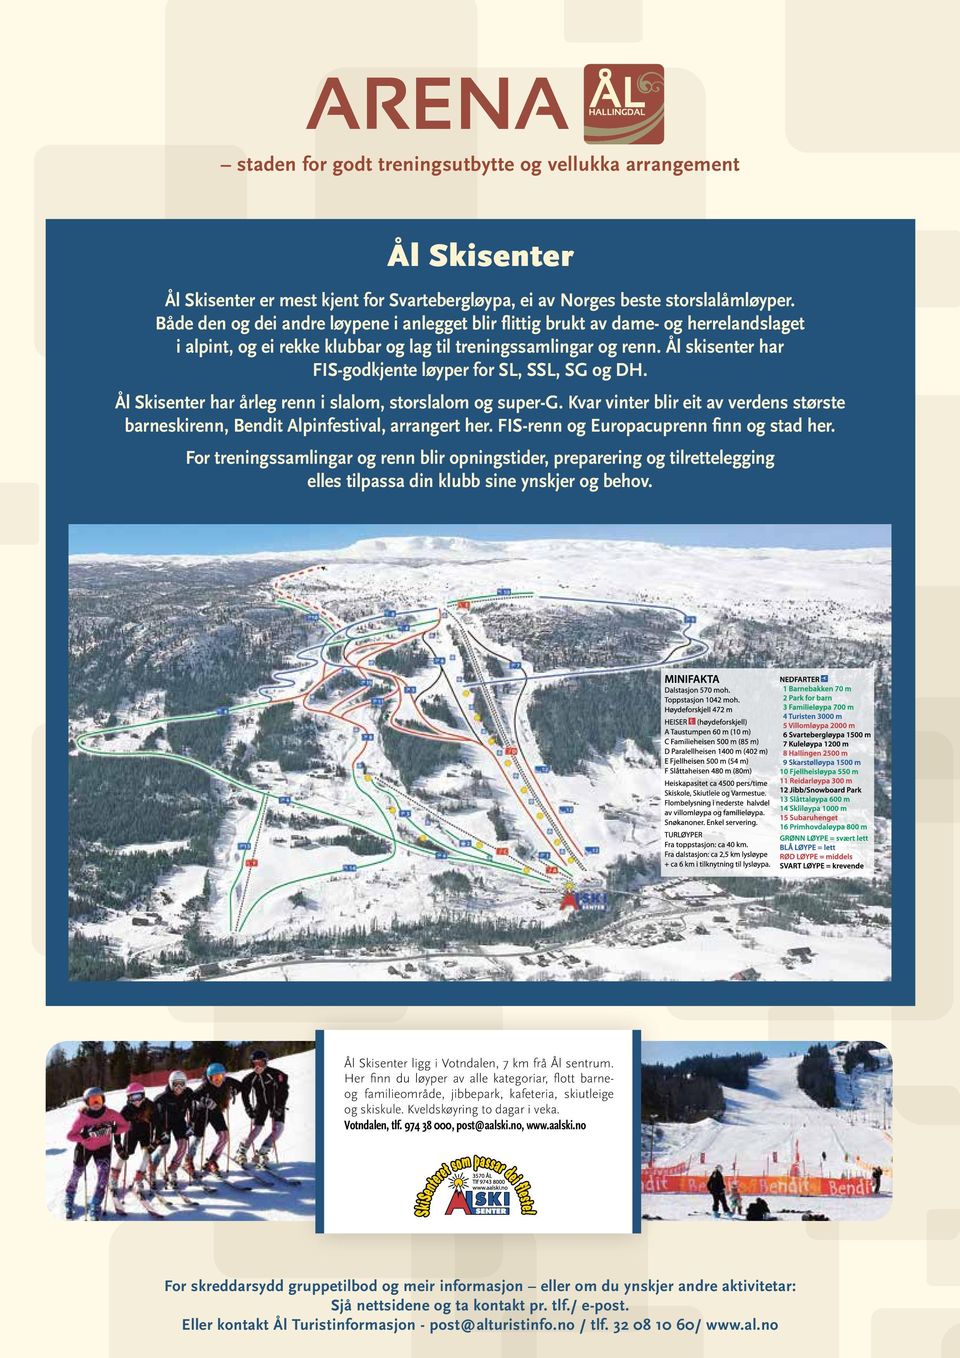 Ål skisenter har FIS-godkjente løyper for SL, SSL, SG og DH. Ål Skisenter har årleg renn i slalom, storslalom og super-g.